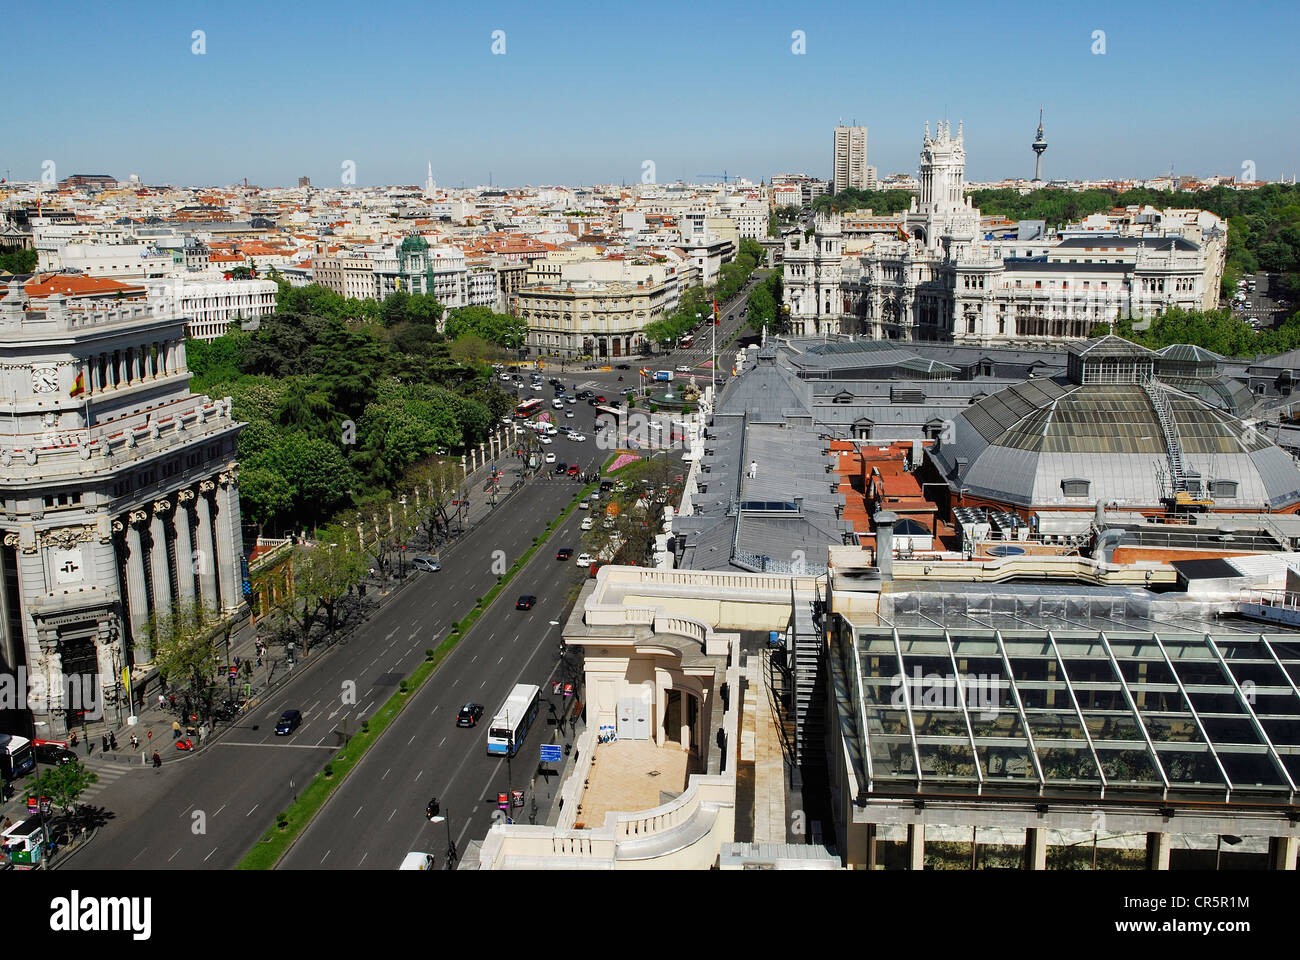 Spain, Madrid, the calle de Alcalá seen from the terrace of the Circulo de Bellas Artes Stock Photo